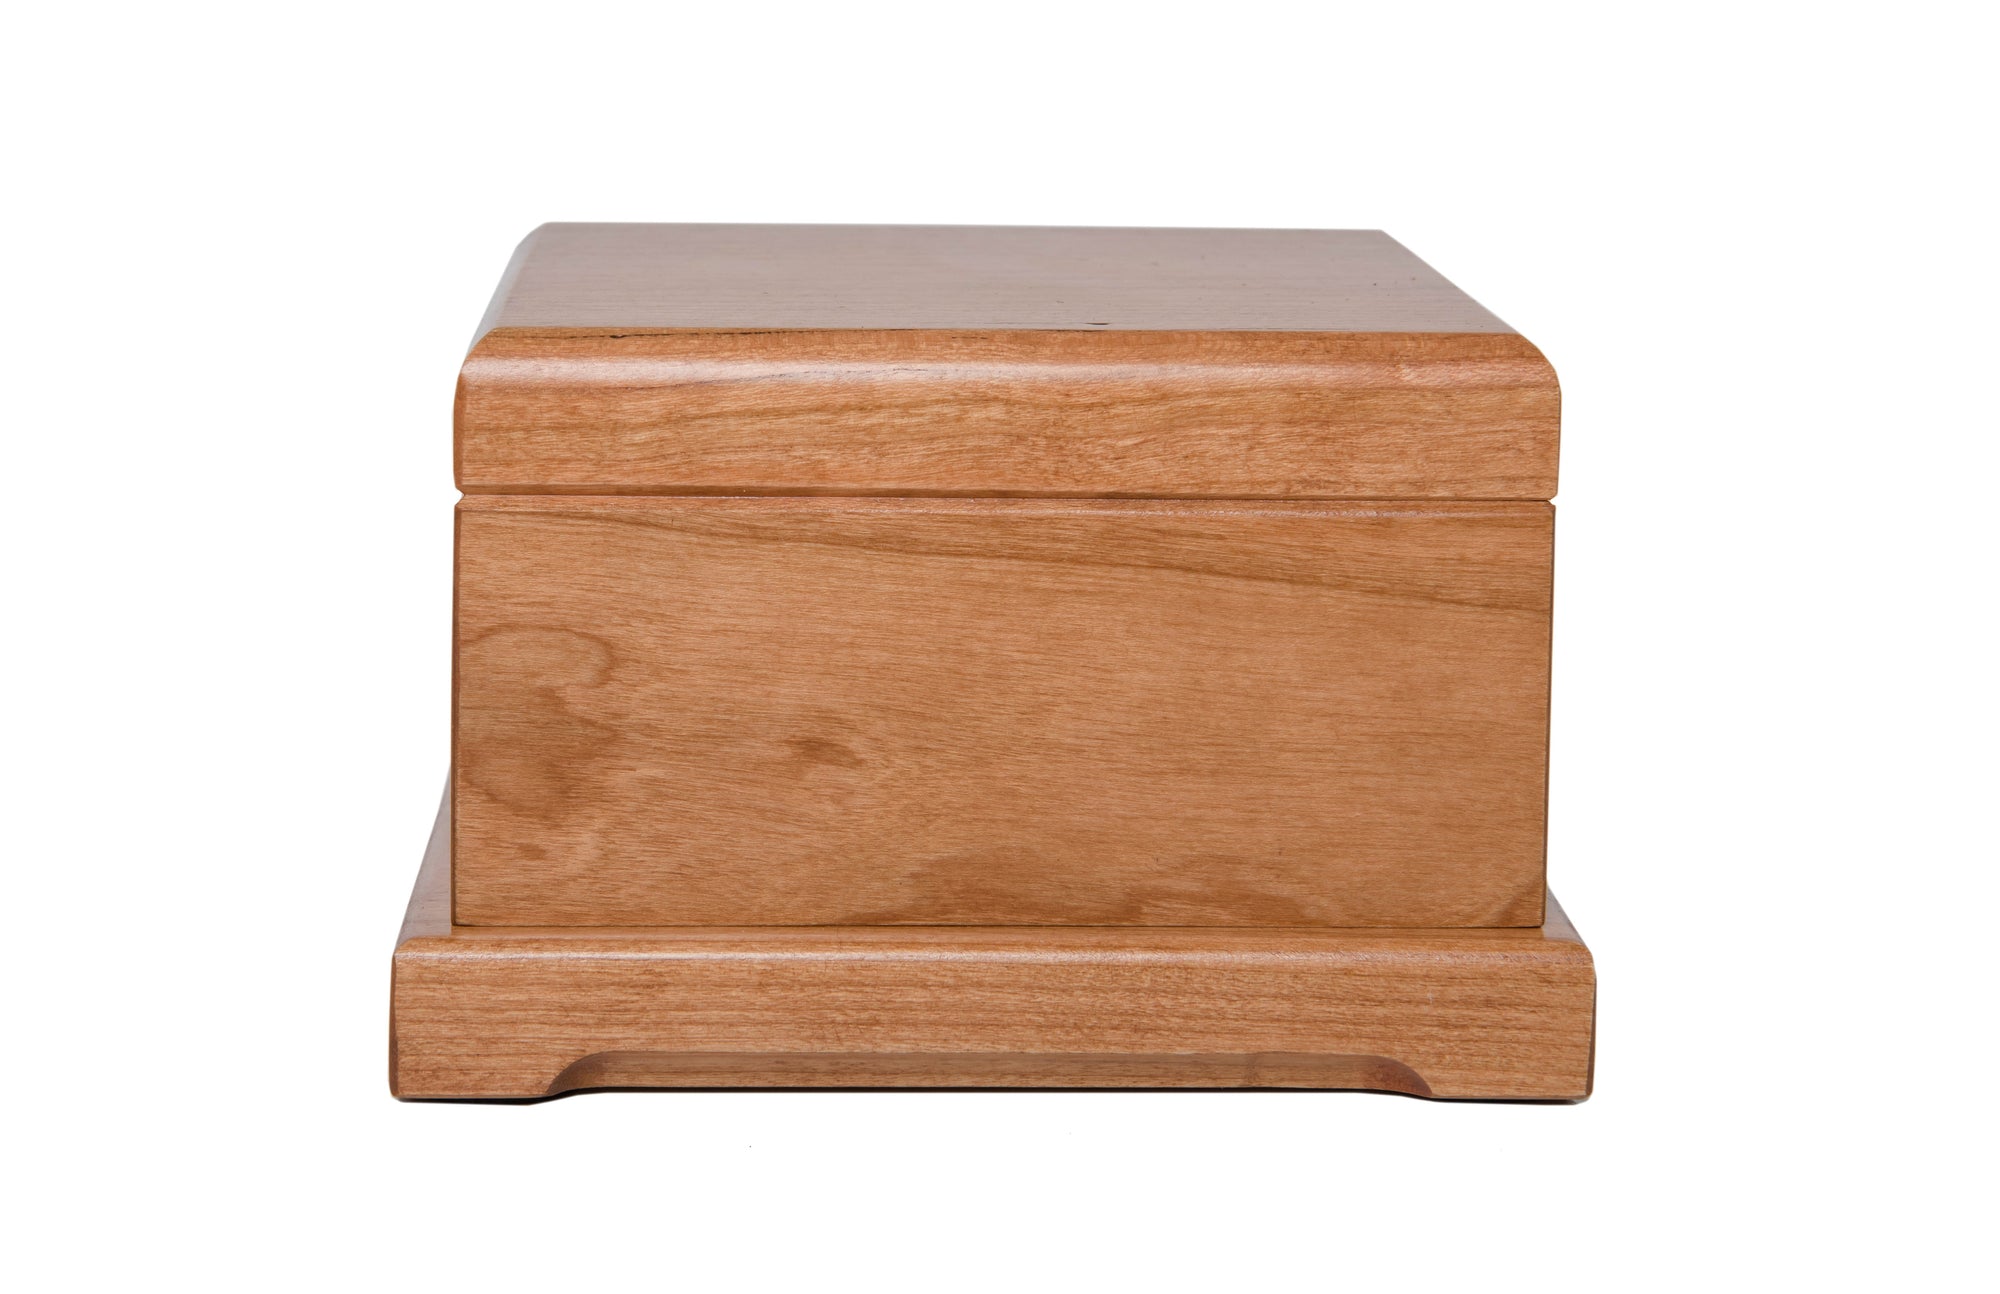 Pet Memorial Keepsake Urn Box for Dog or Cat - In Loving Memory